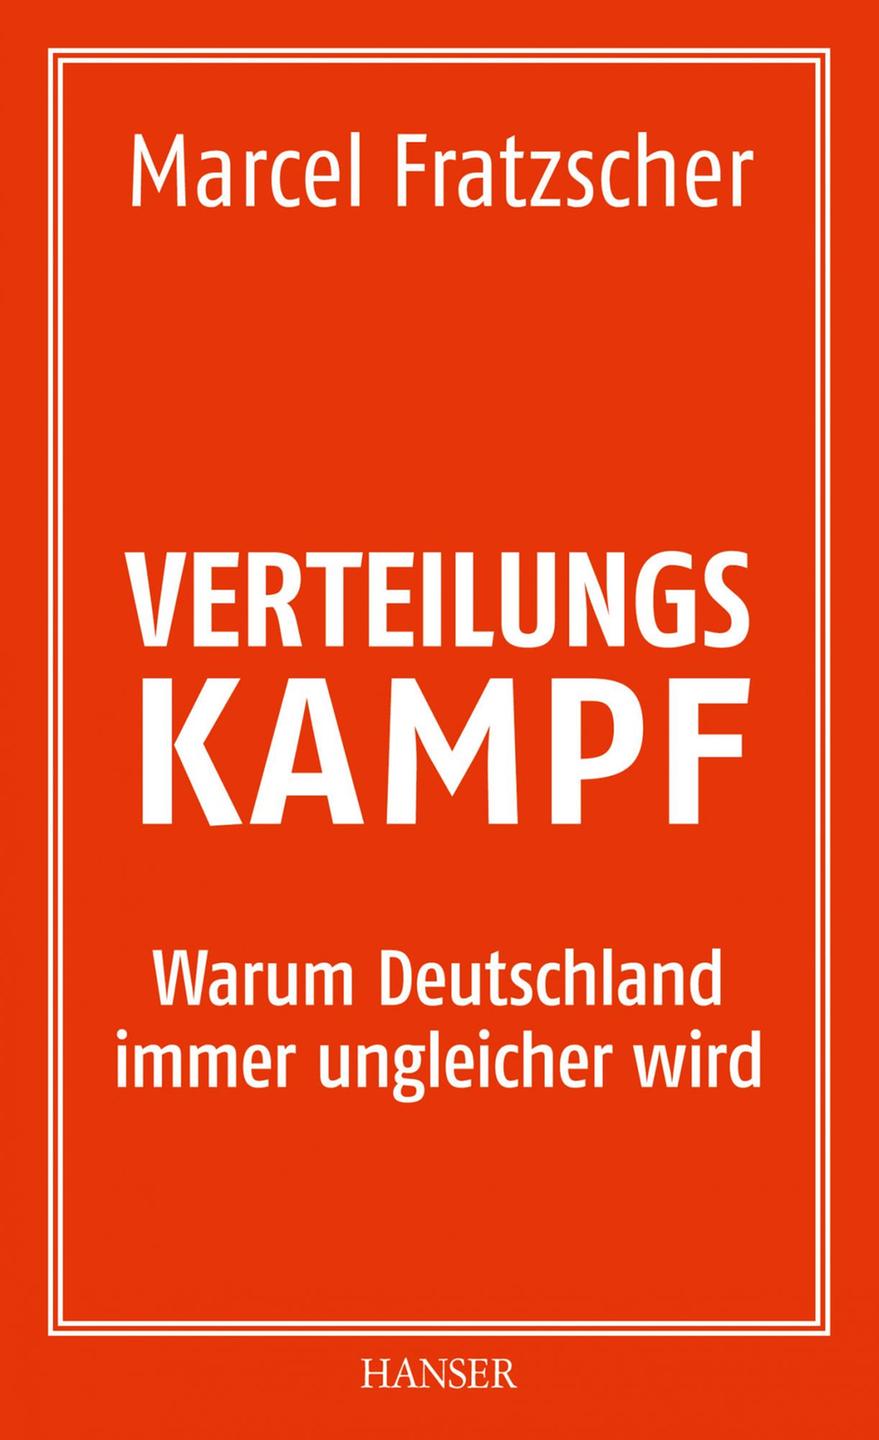 Buchcover: "Verteilungskampf. Warum Deutschland immer ungleicher wird" von Marcel Fratzscher